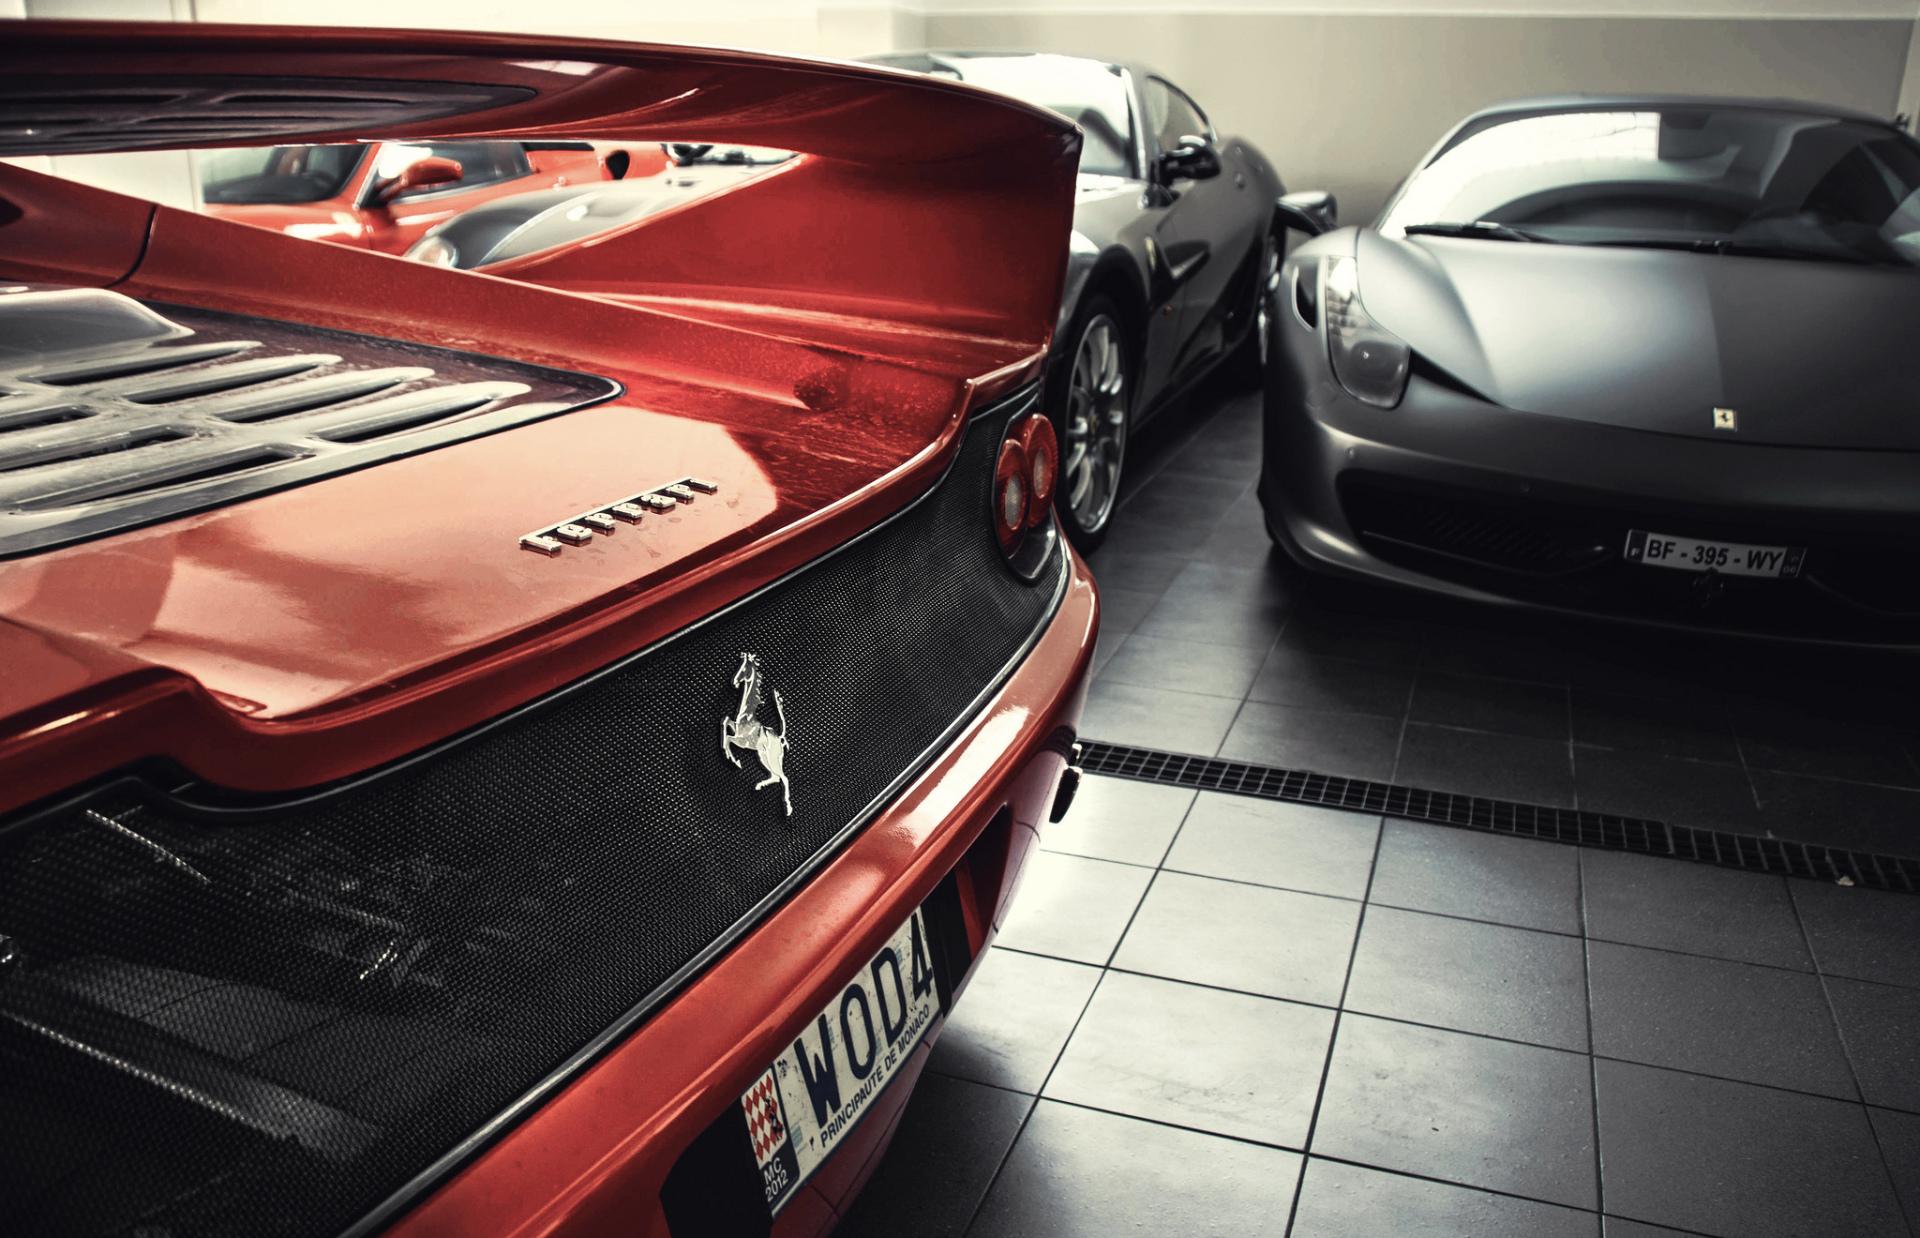 Ferrari F50 at 1024 x 768 size wallpapers HD quality